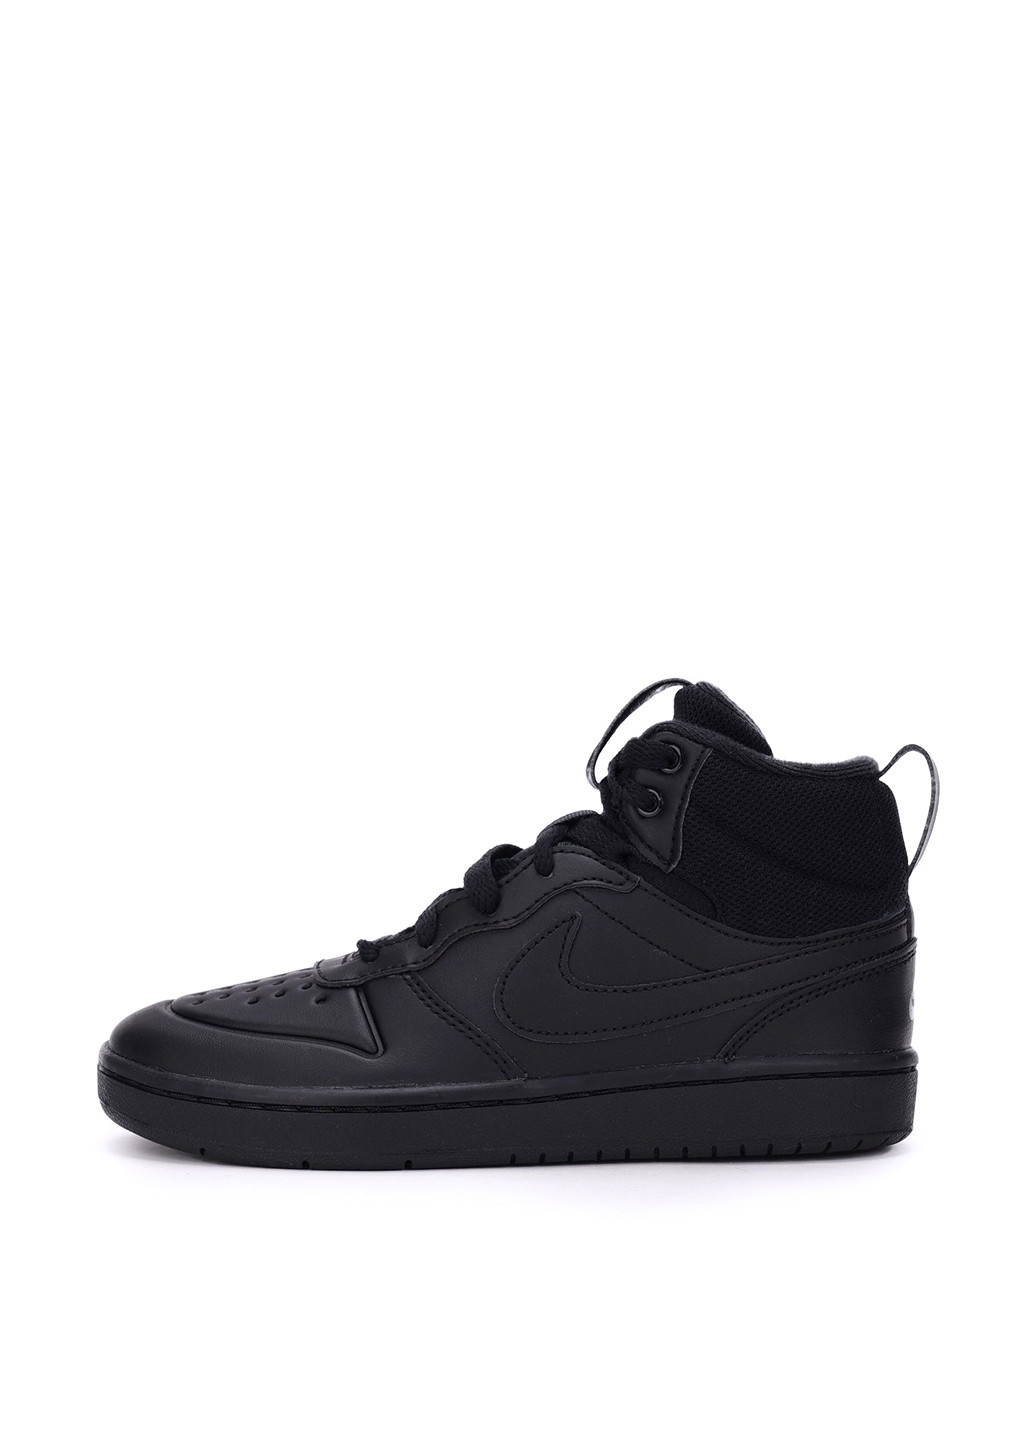 Черные спортивные осенние ботинки Nike